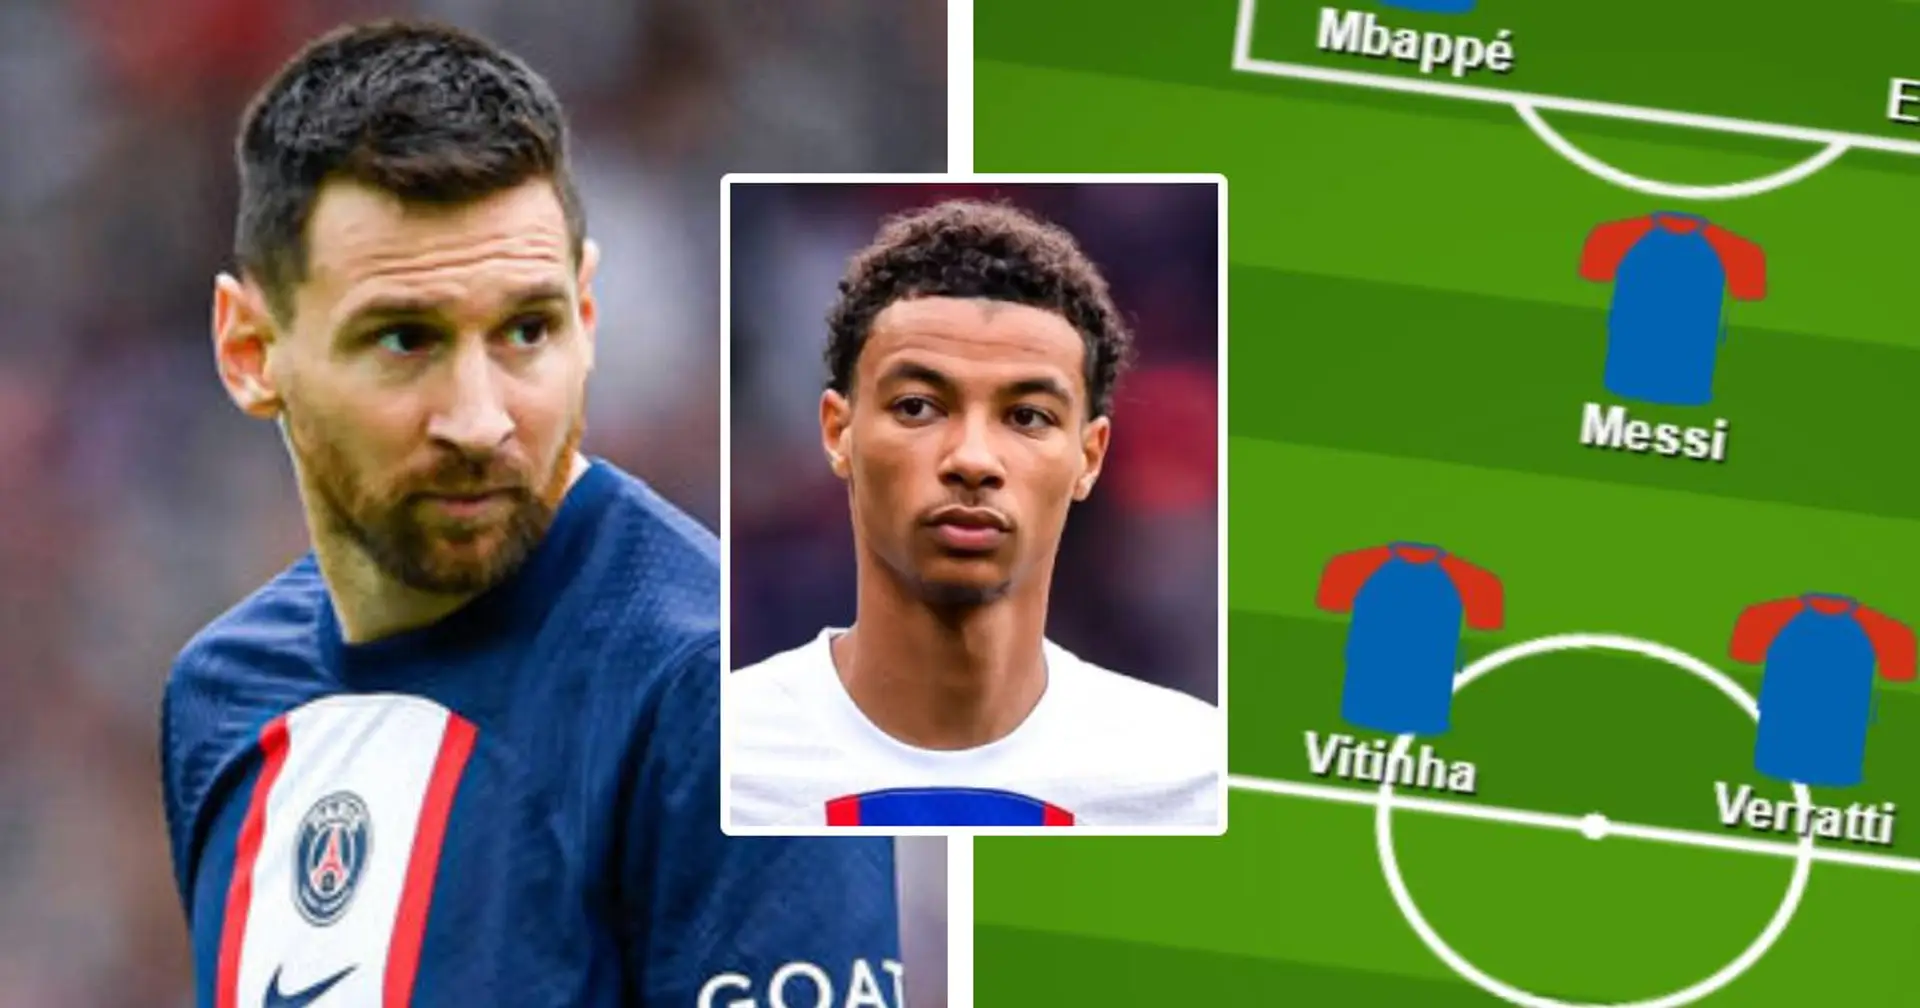 "La réflexion existe" : Galtier envisage un trio offensif face à Ajaccio avec Messi de retour - la compo probable dessinée